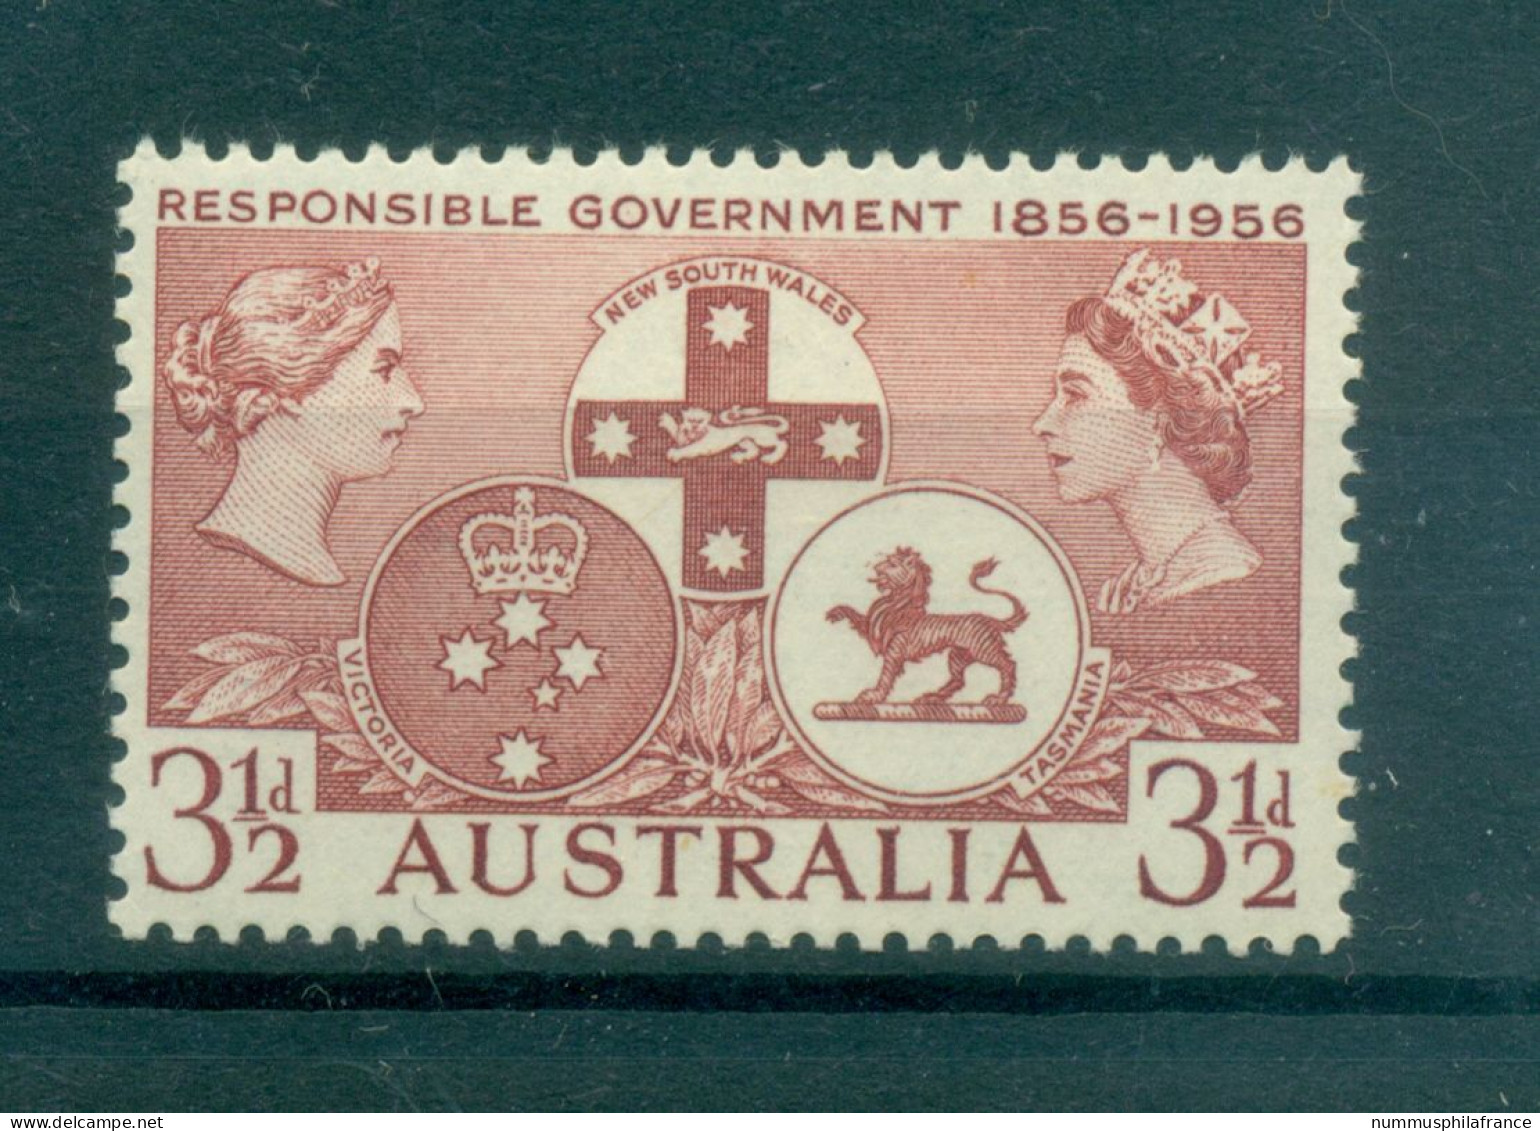 Australie 1956 - Y & T N. 230 - Gouvernements Responsables (Michel N. 262) - Neufs